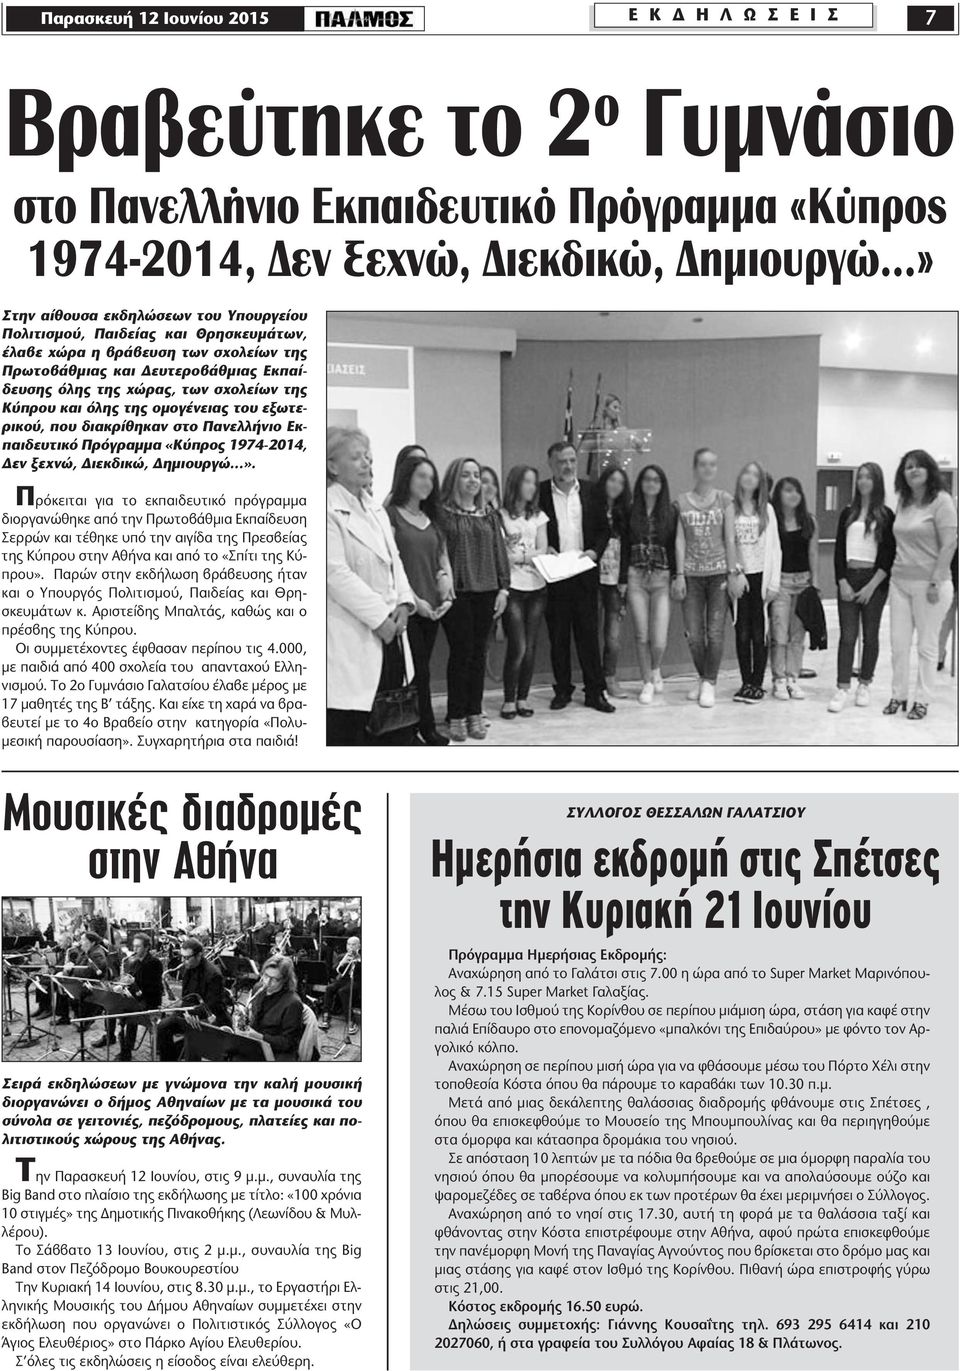 εξωτερικού, που διακρίθηκαν στο Πανελλήνιο Εκπαιδευτικό Πρόγραµµα «Κύπρος 1974-2014, εν ξεχνώ, ιεκδικώ, ηµιουργώ».